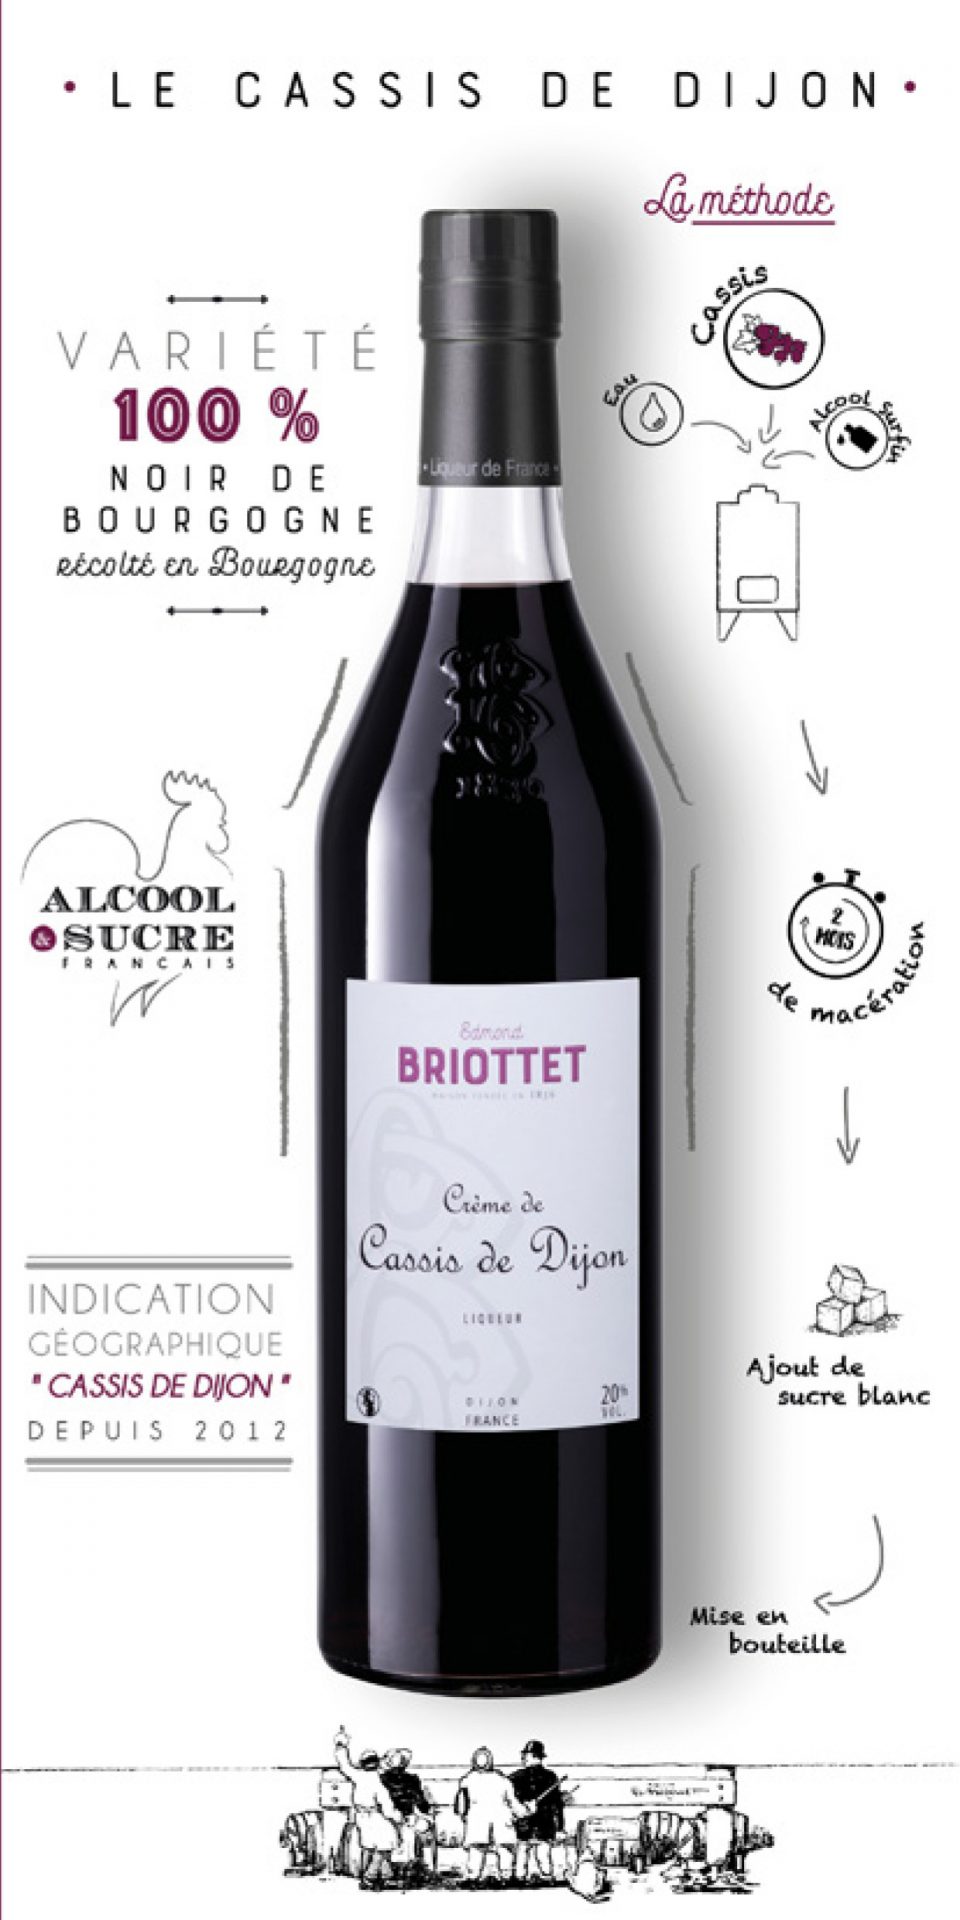 Sélection Digestif de la Maison Briottet, liquoriste français indépendant